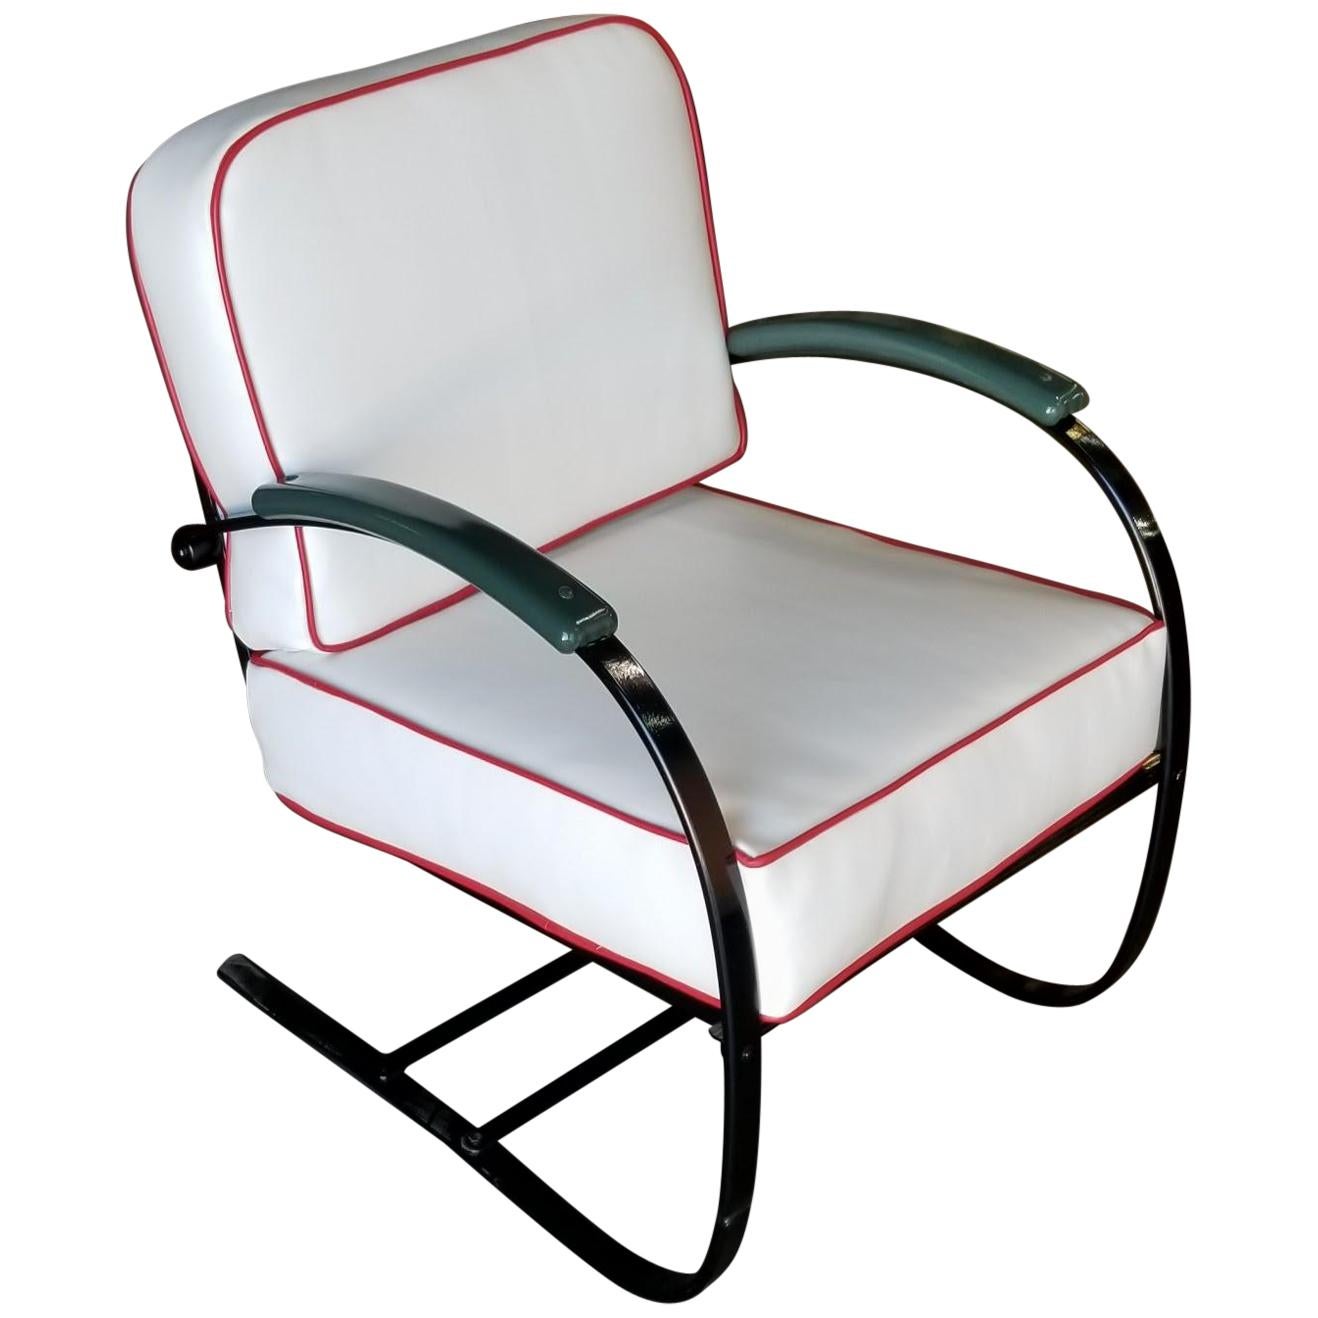 Wolfgang Hoffmann Custom Green and Black Springer Chair for Howell